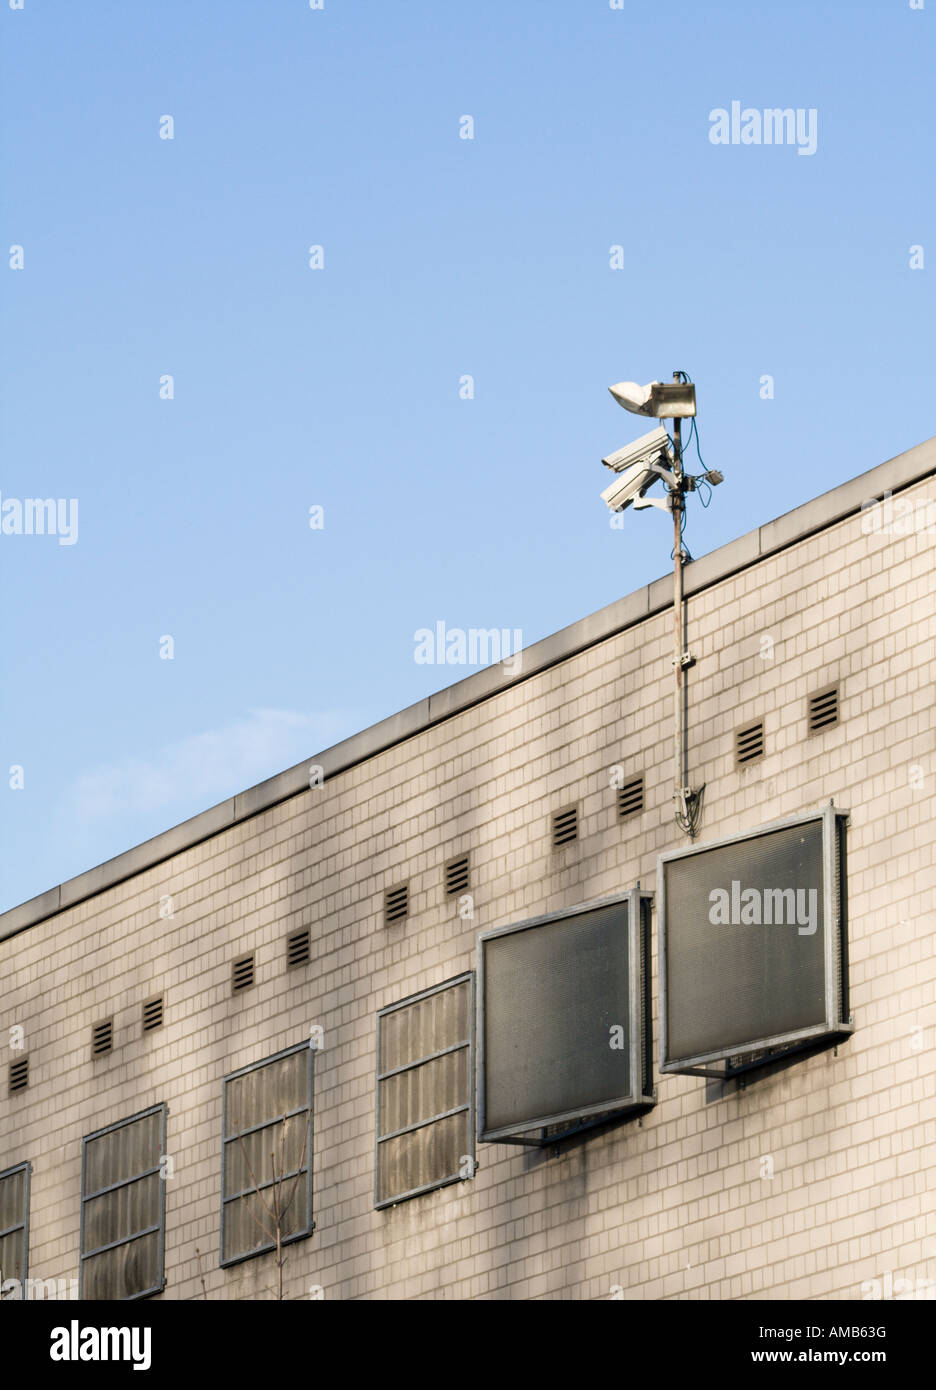 Cámaras de vigilancia en el techo del bloque de celdas de la prisión, cielo azul Foto de stock